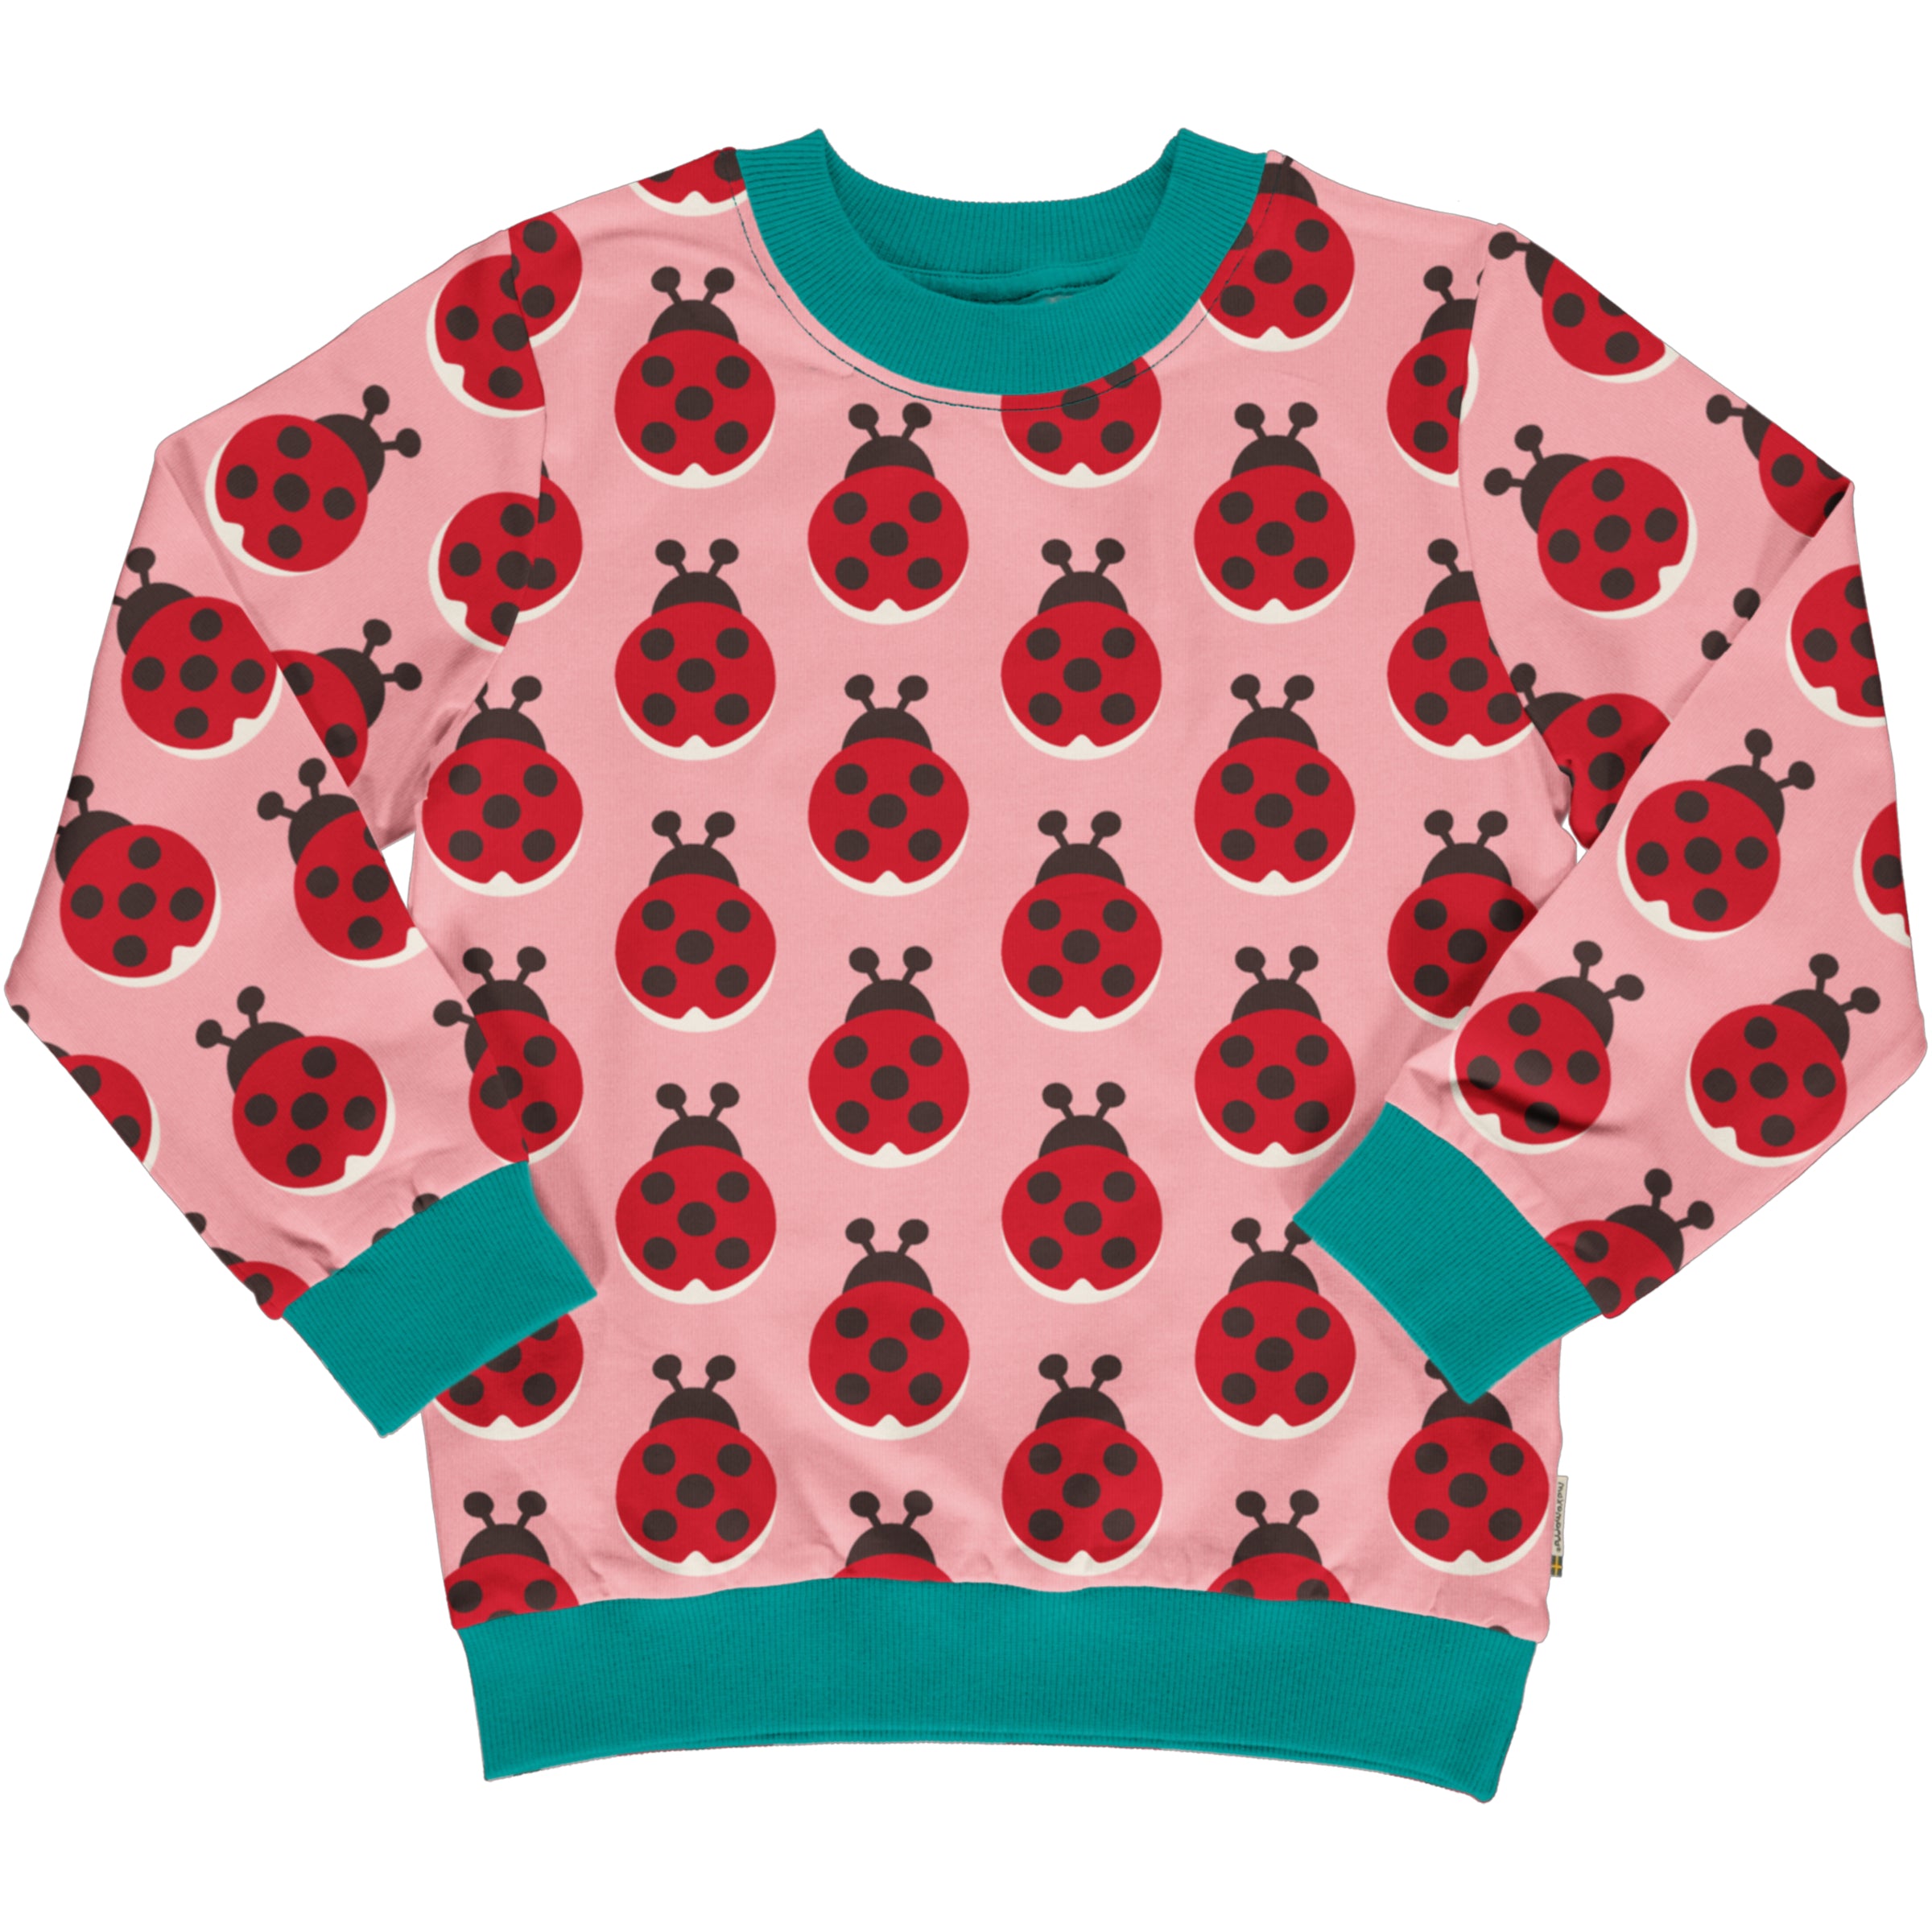 Maxomorra - Sweatshirt - Ladybug ** LAST ONE!